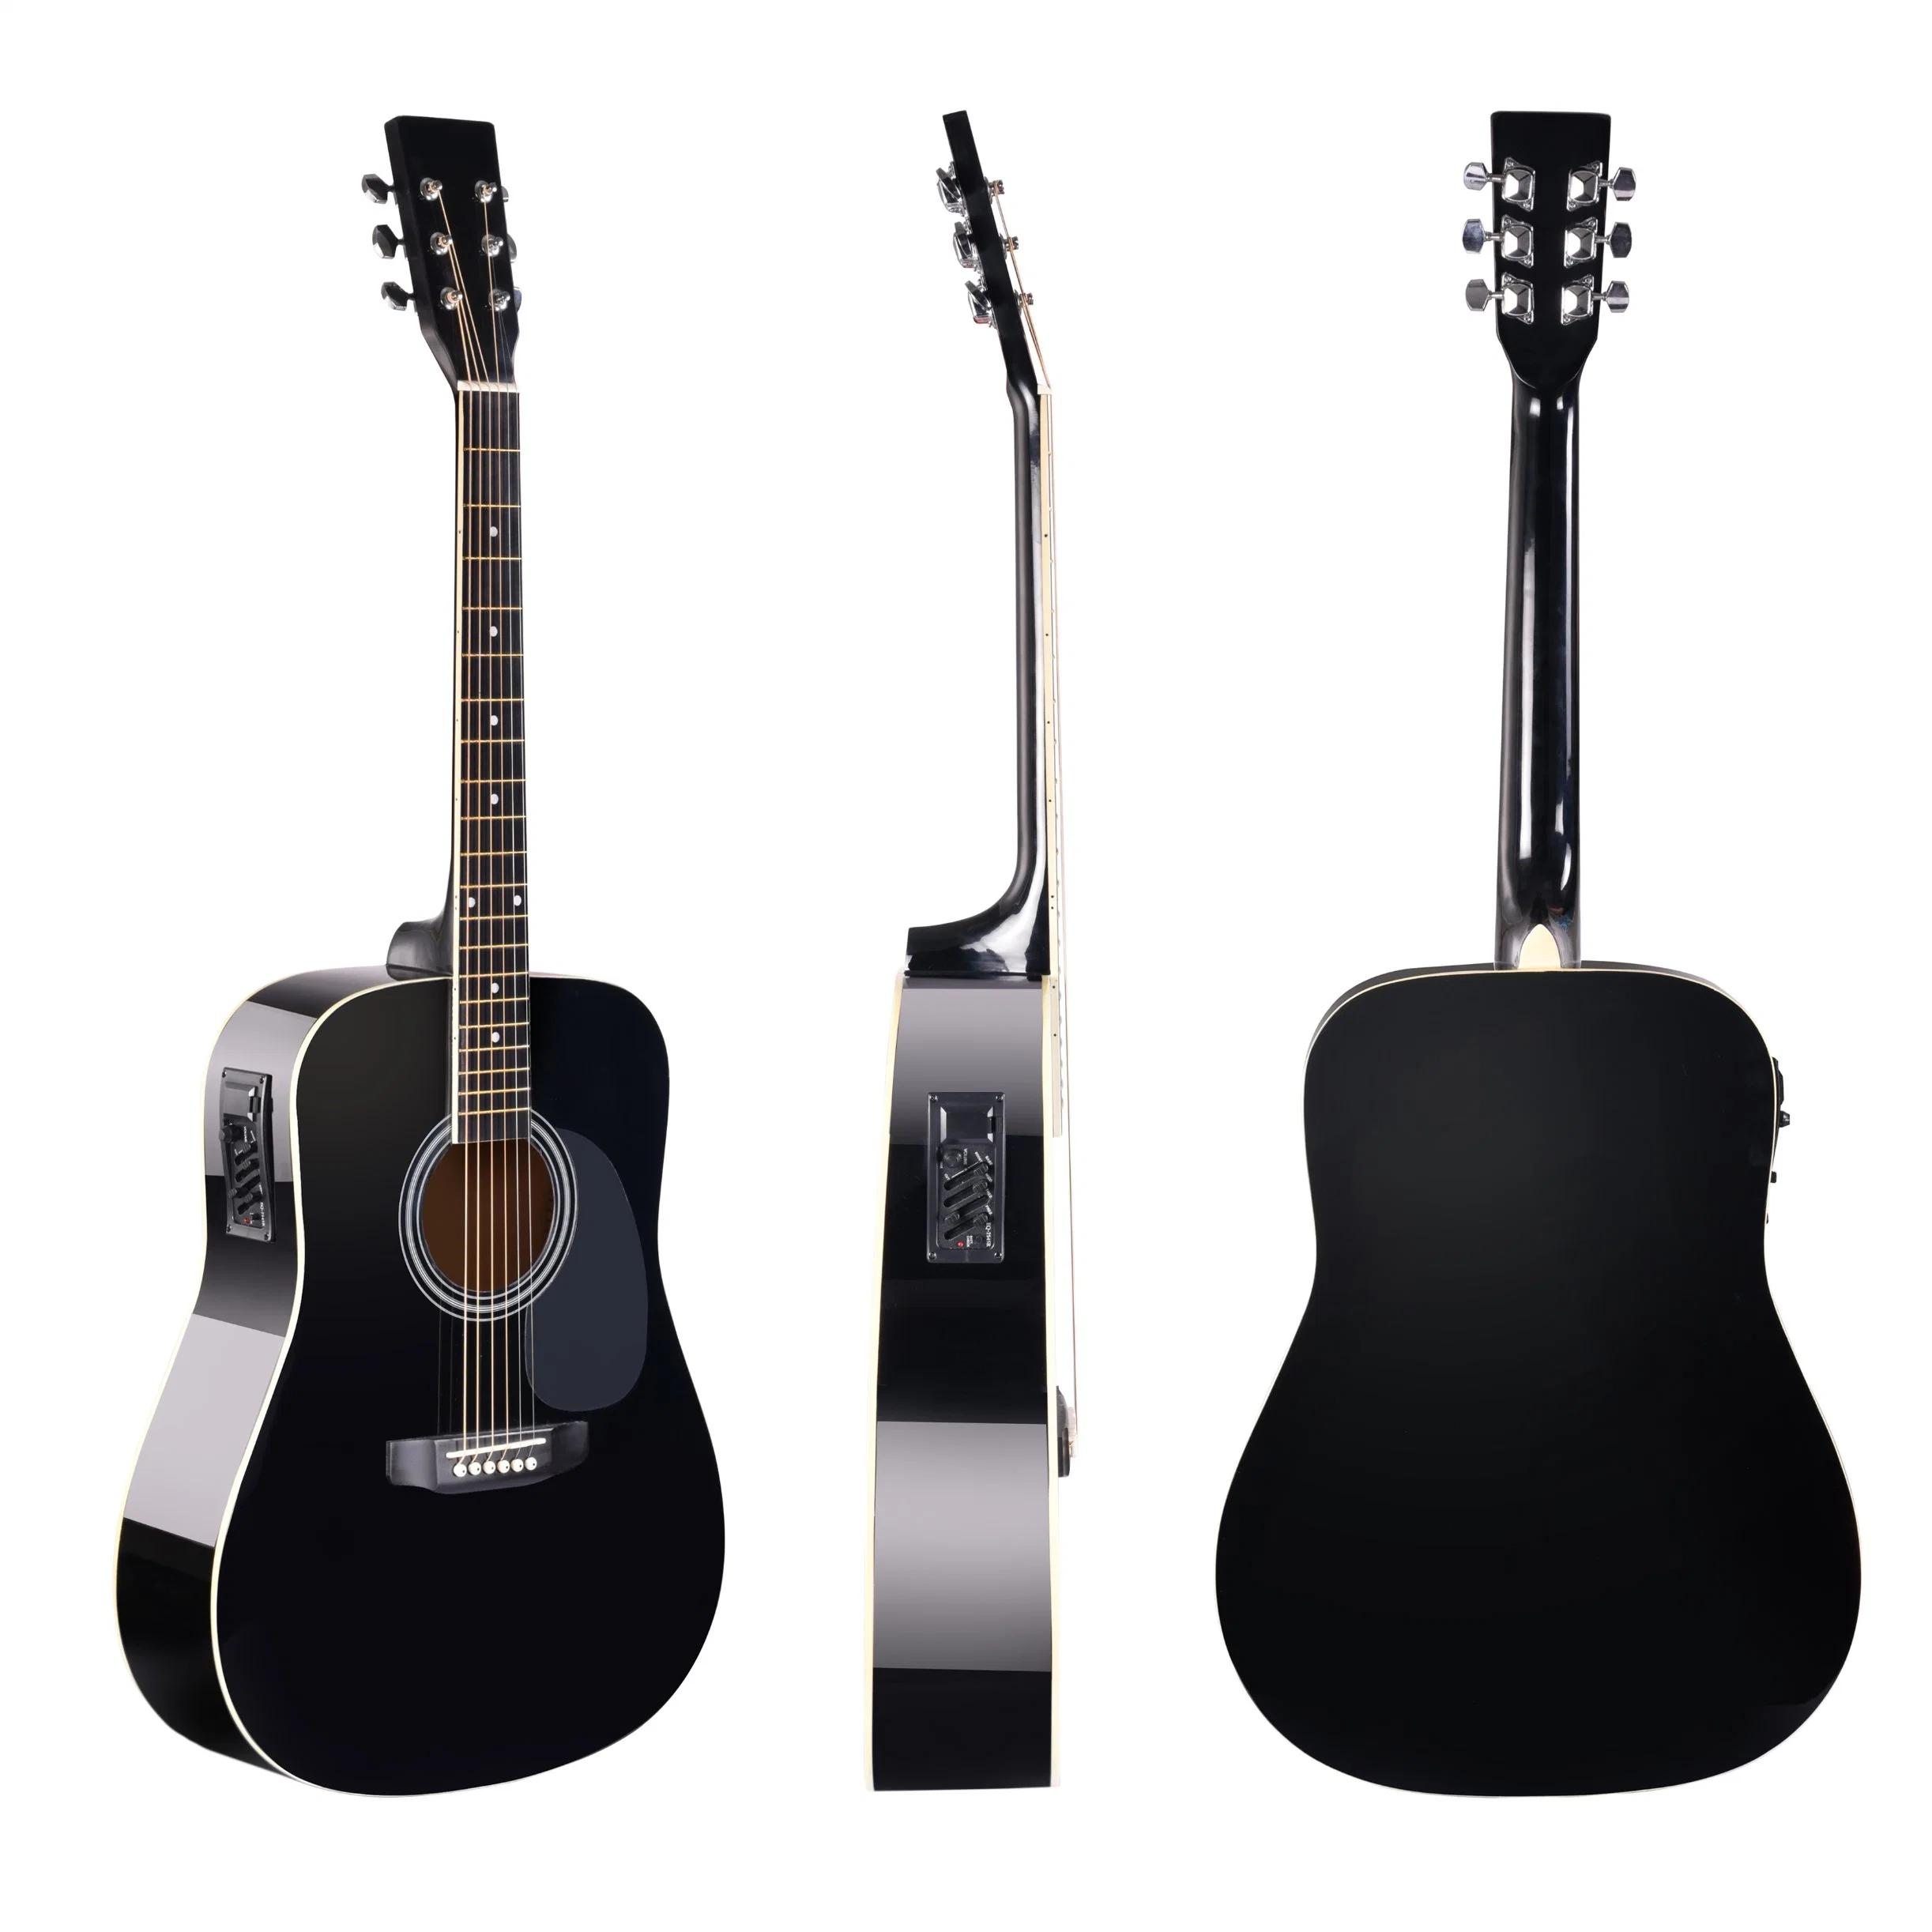 Fa209tce Chinese Factory Handmade Good Quality Acoustic Guitar mais barato Guitar Para o novato